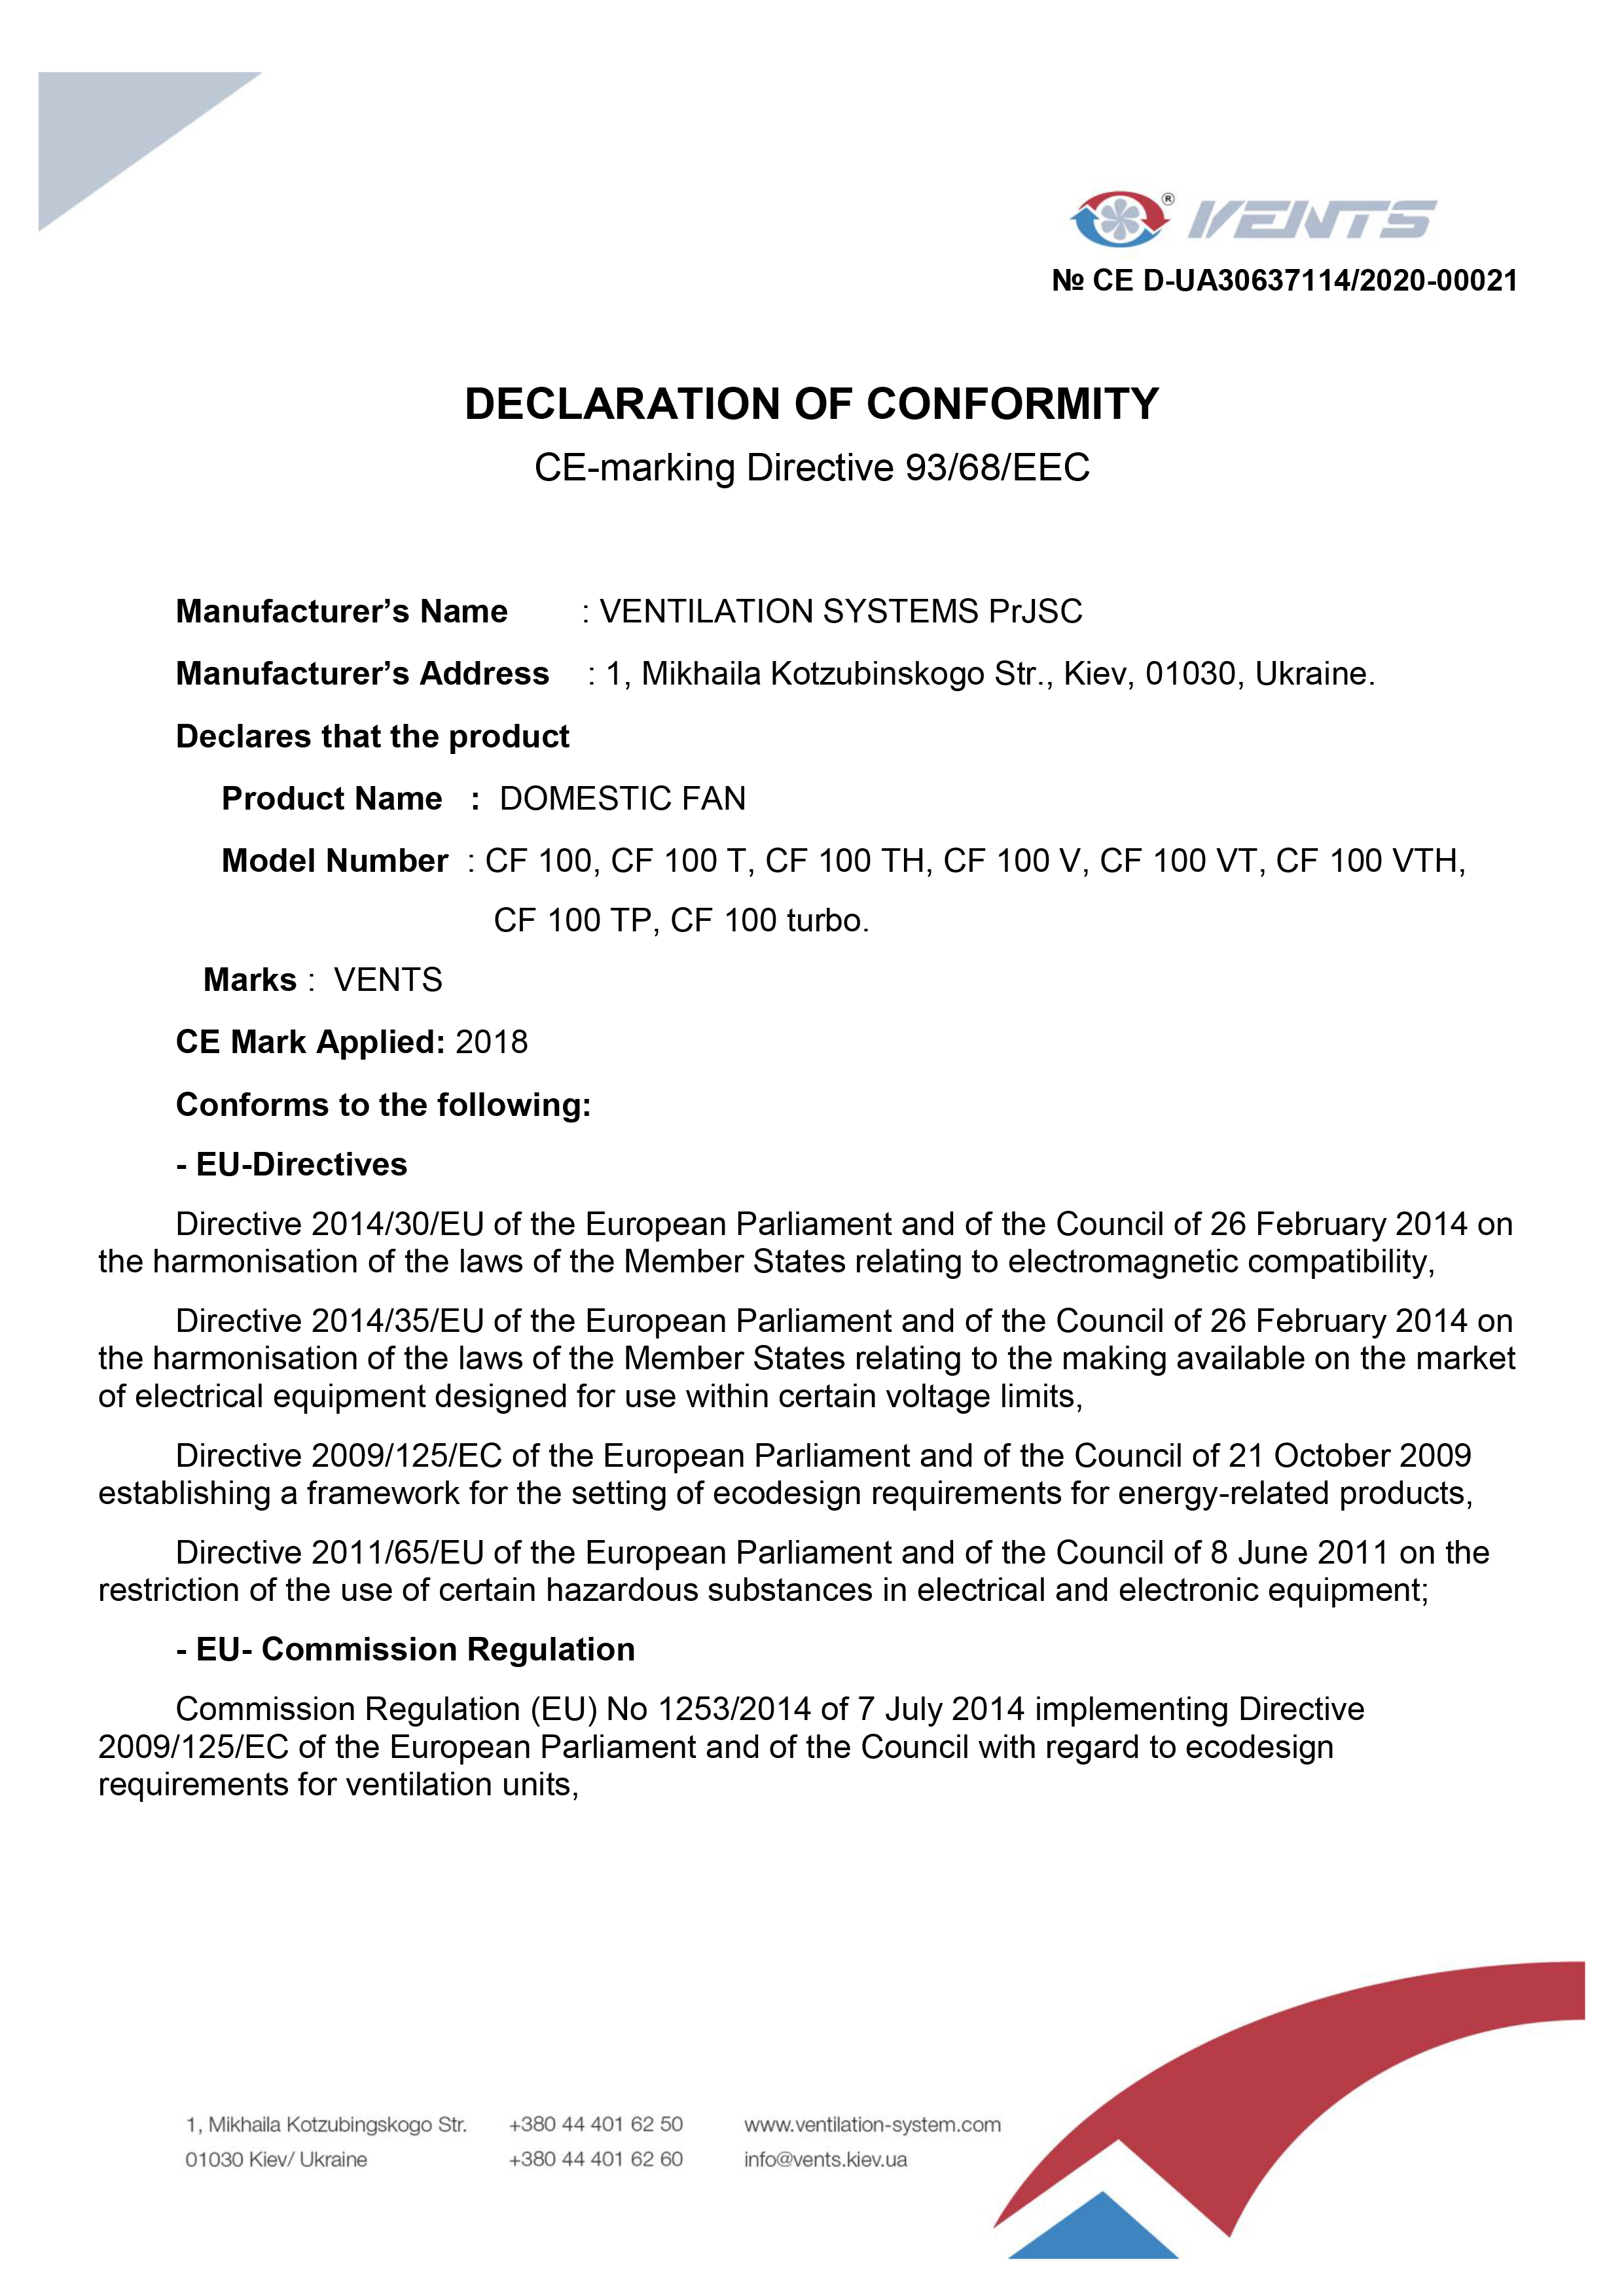 DECLARATION of CONFORMITY "CF / CF TURBO"